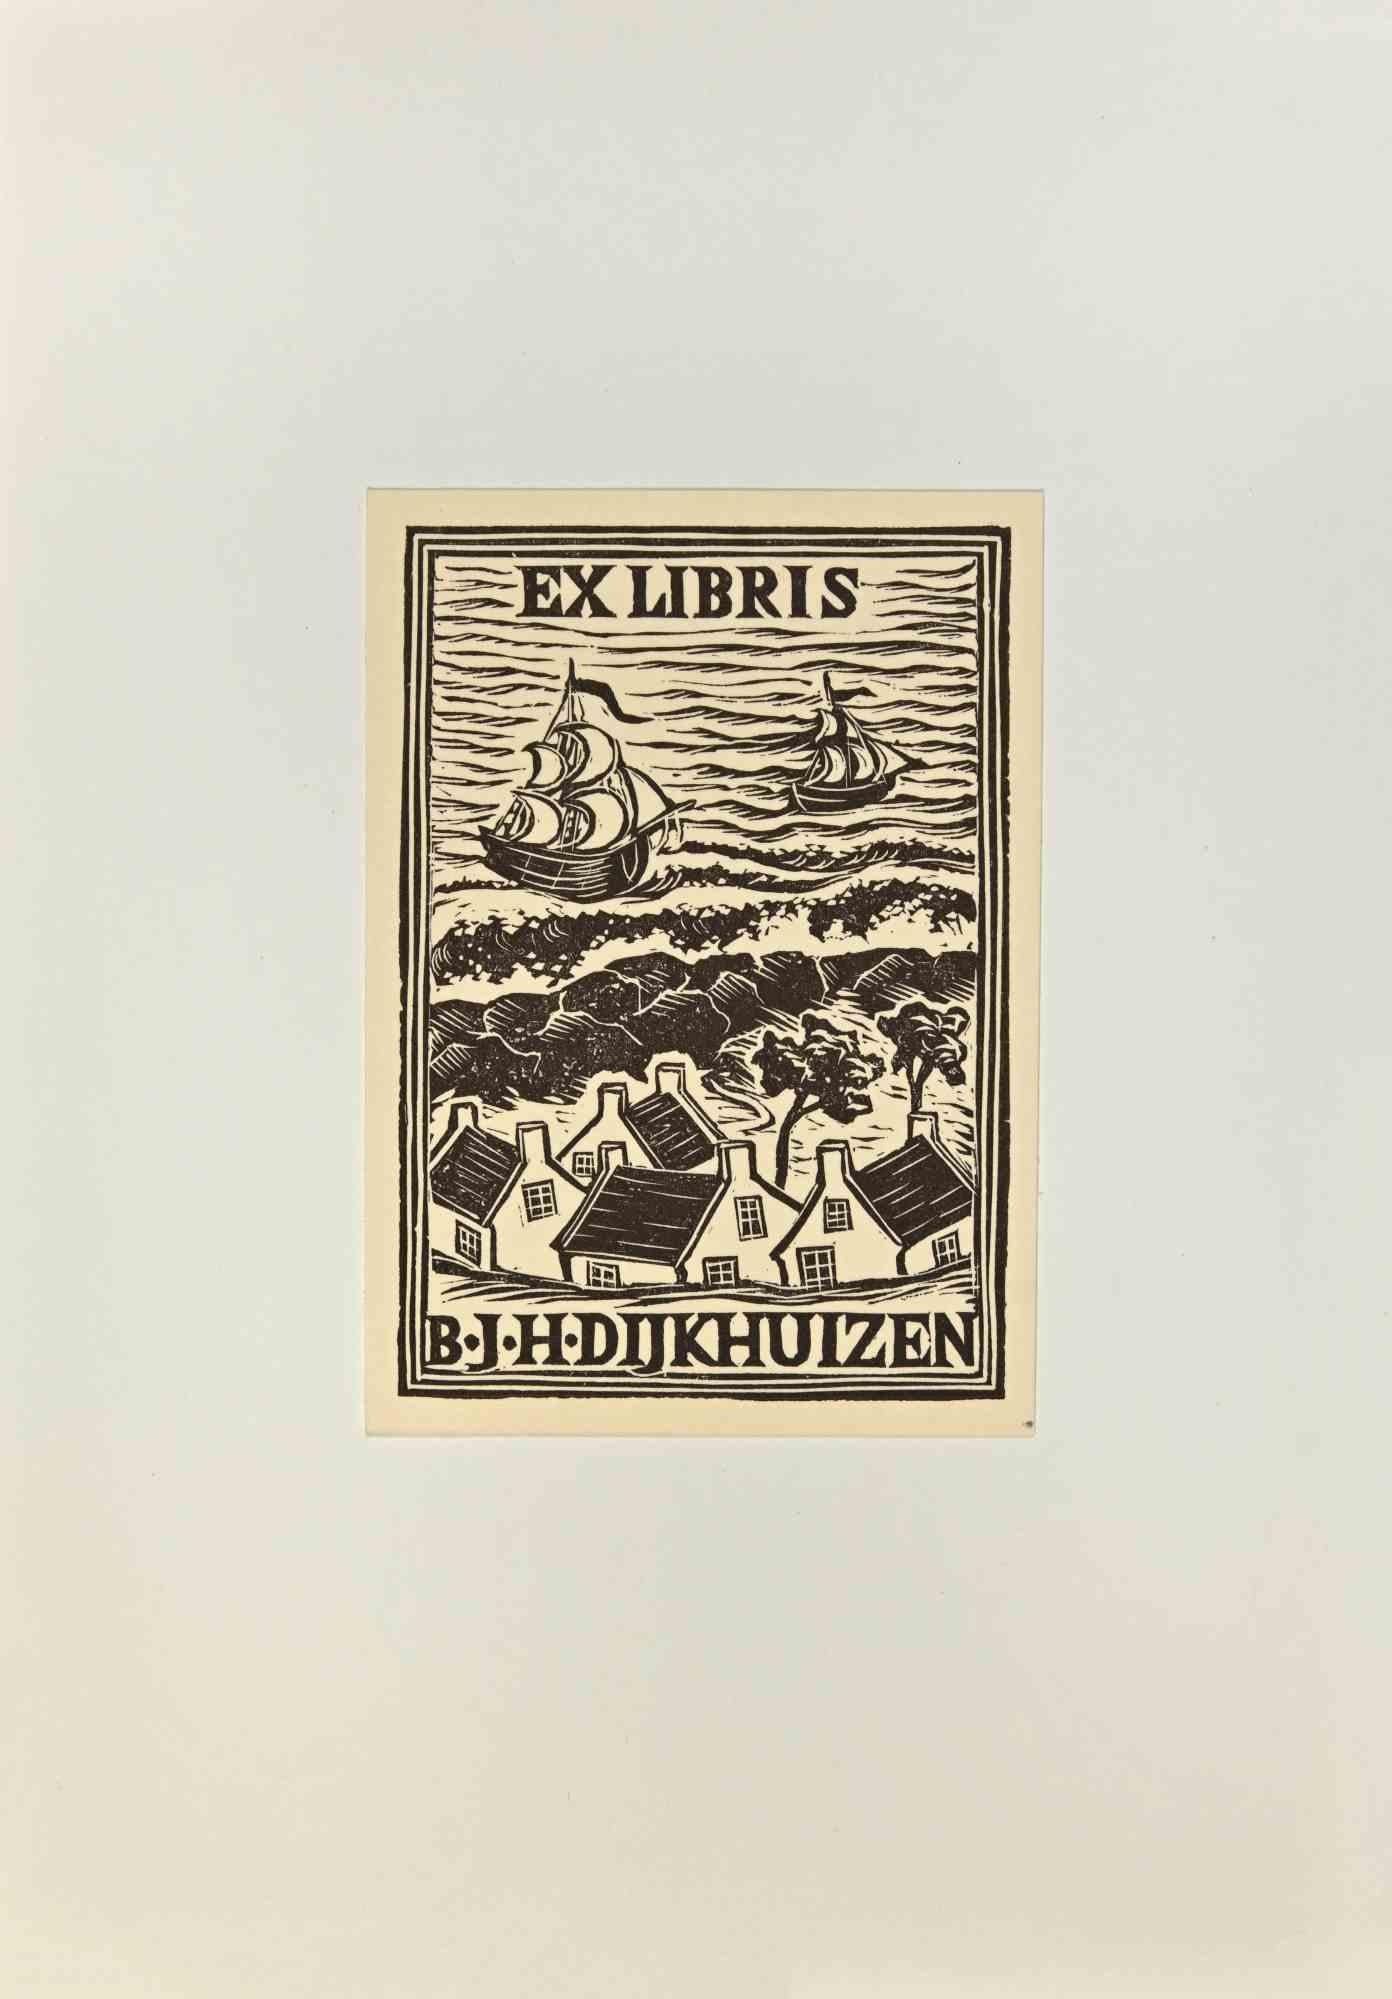   Ex Libris - B. J. H. Dijkhuizen - Holzschnitt - Mitte des 20. Jahrhunderts – Art von Unknown